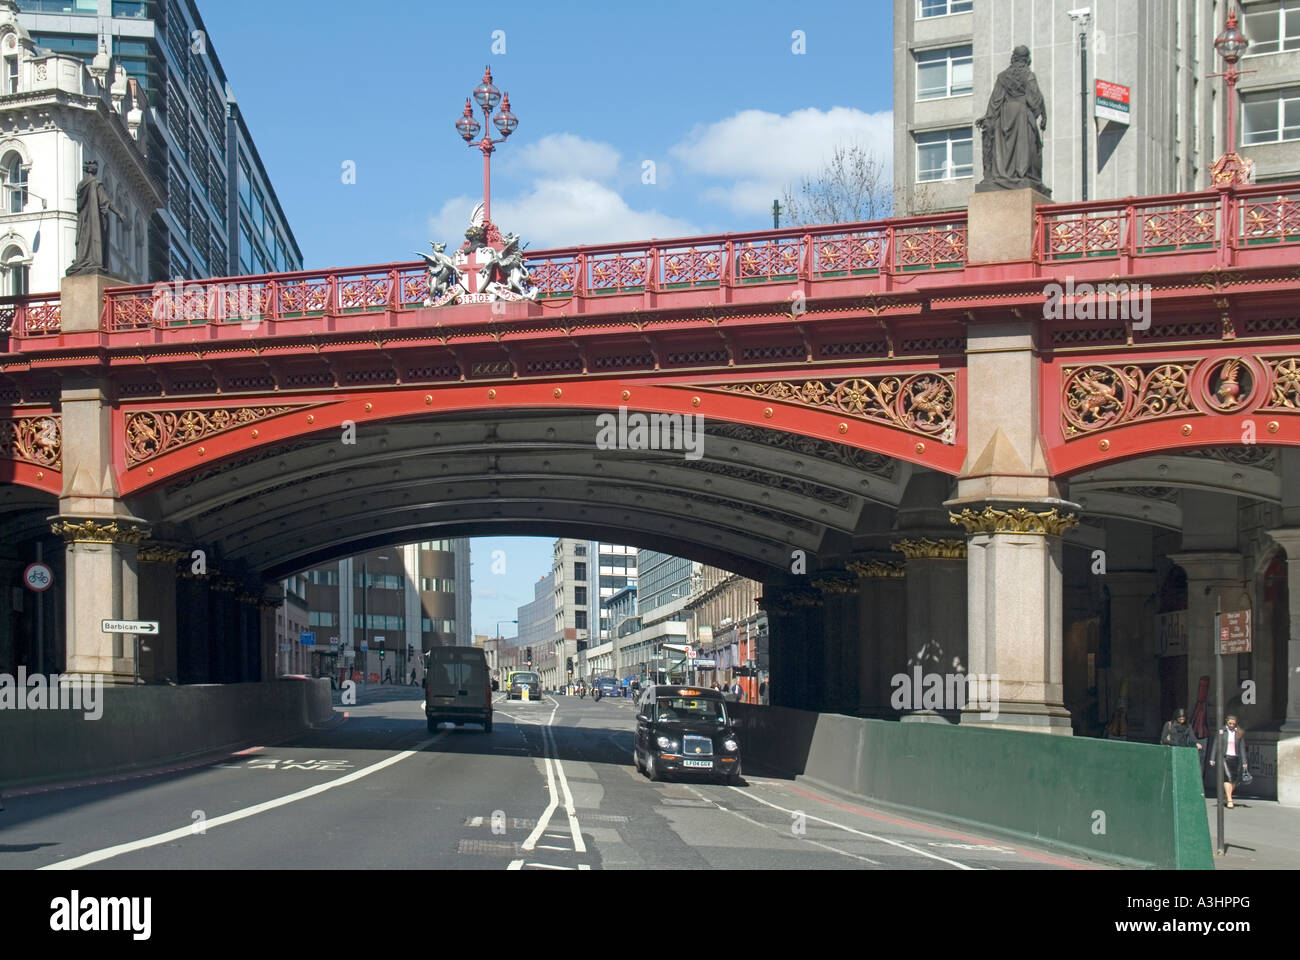 Holborn Viadukt viktorianische Straße Brücke Struktur geöffnet 1869 trägt die A40 Straße über Farringdon Straße & Subterranean River Flotte London England Großbritannien Stockfoto